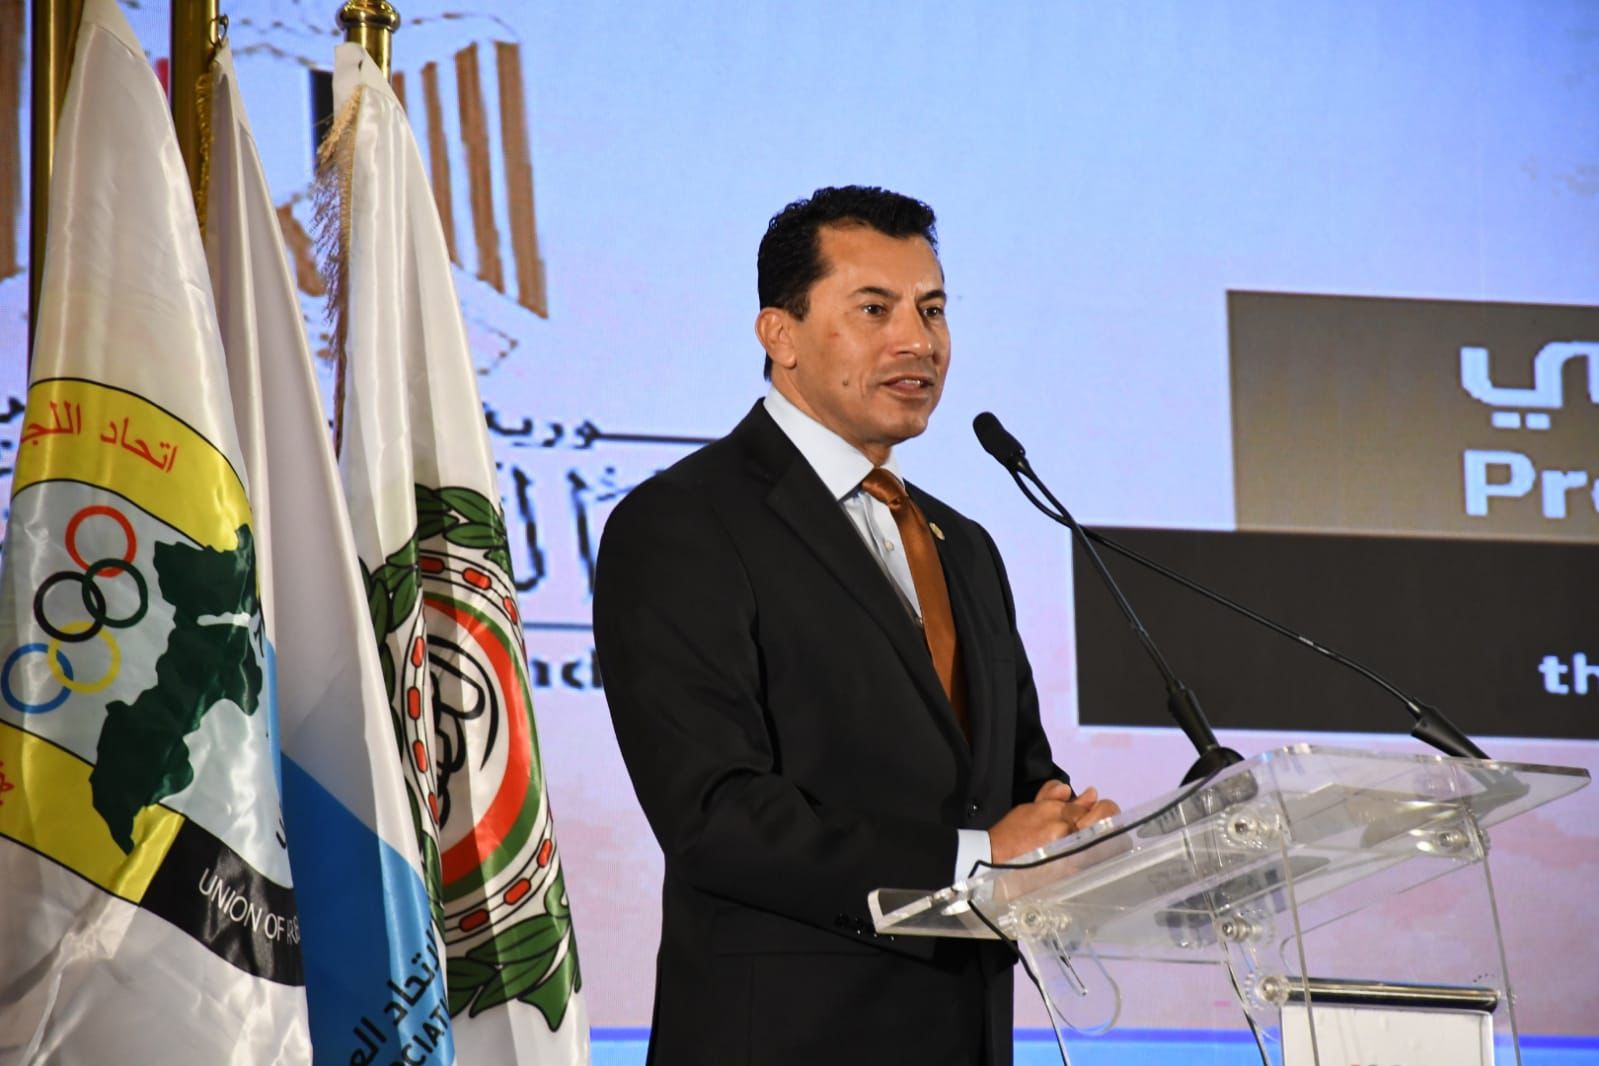 ‎وزير الشباب والرياضة يُكرم الفائزين بجوائز الثقافة الرياضية العربية علي هامش المؤتمر الدولي للثقافة الرياضية .